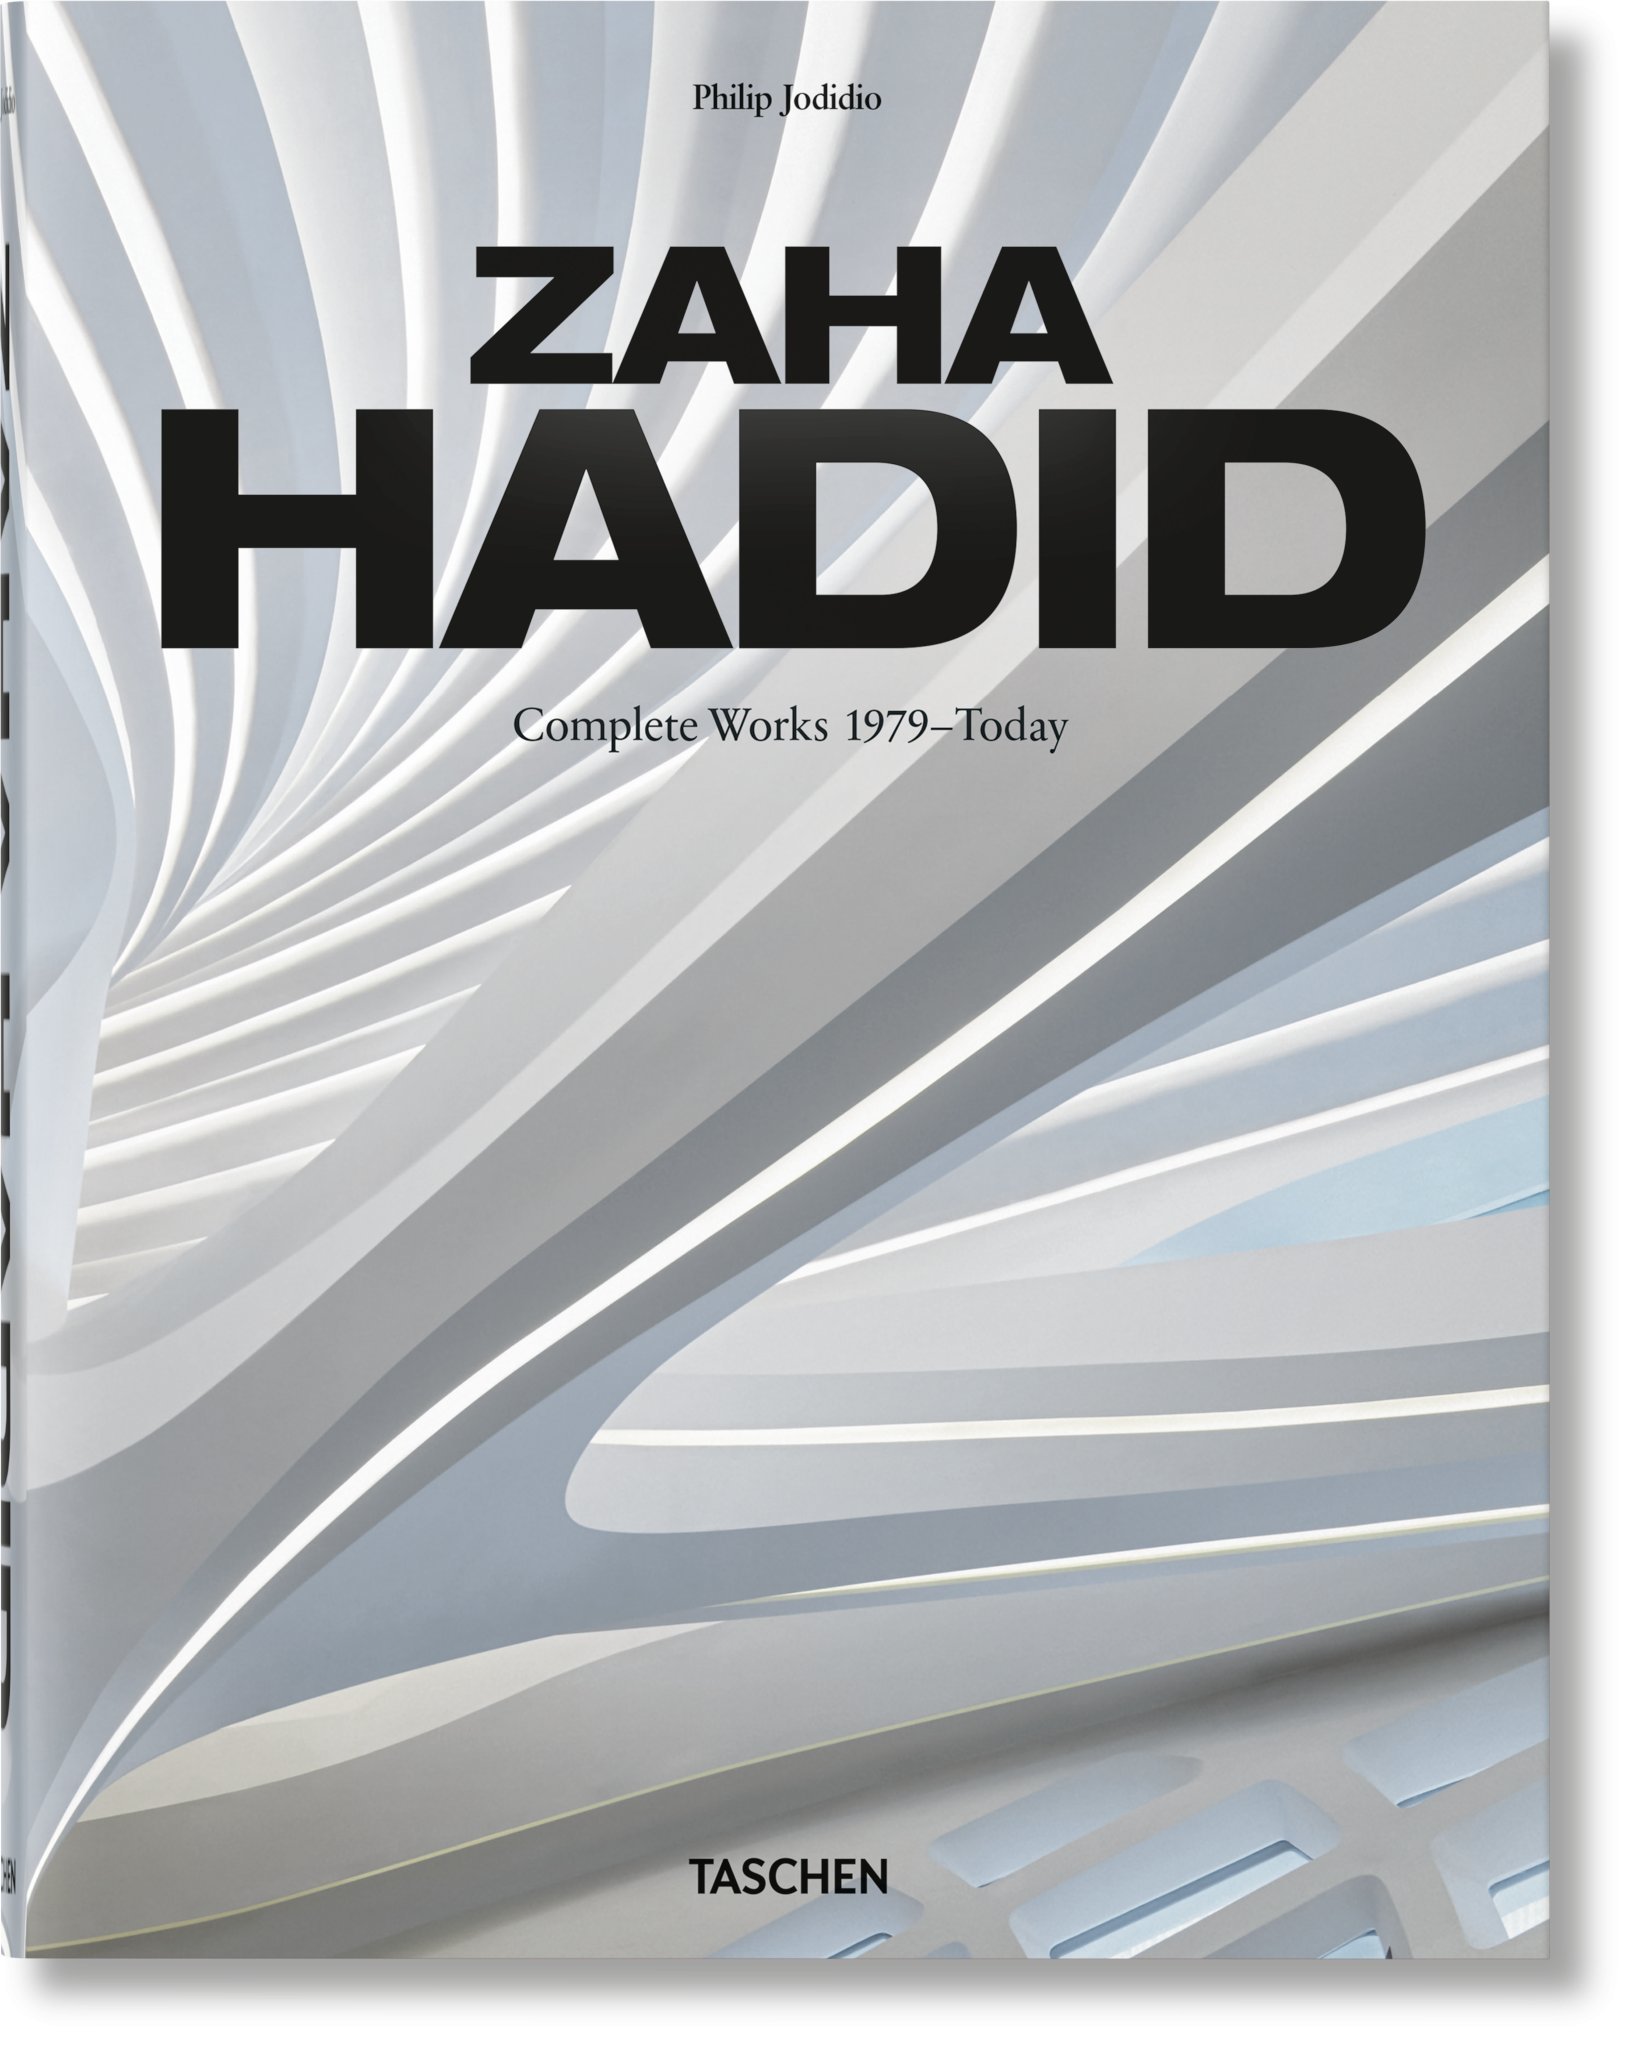 ju hadid update 2020 cover 03441 Taschen honra la obra de Zaha Hadid en la nueva edición de su libro